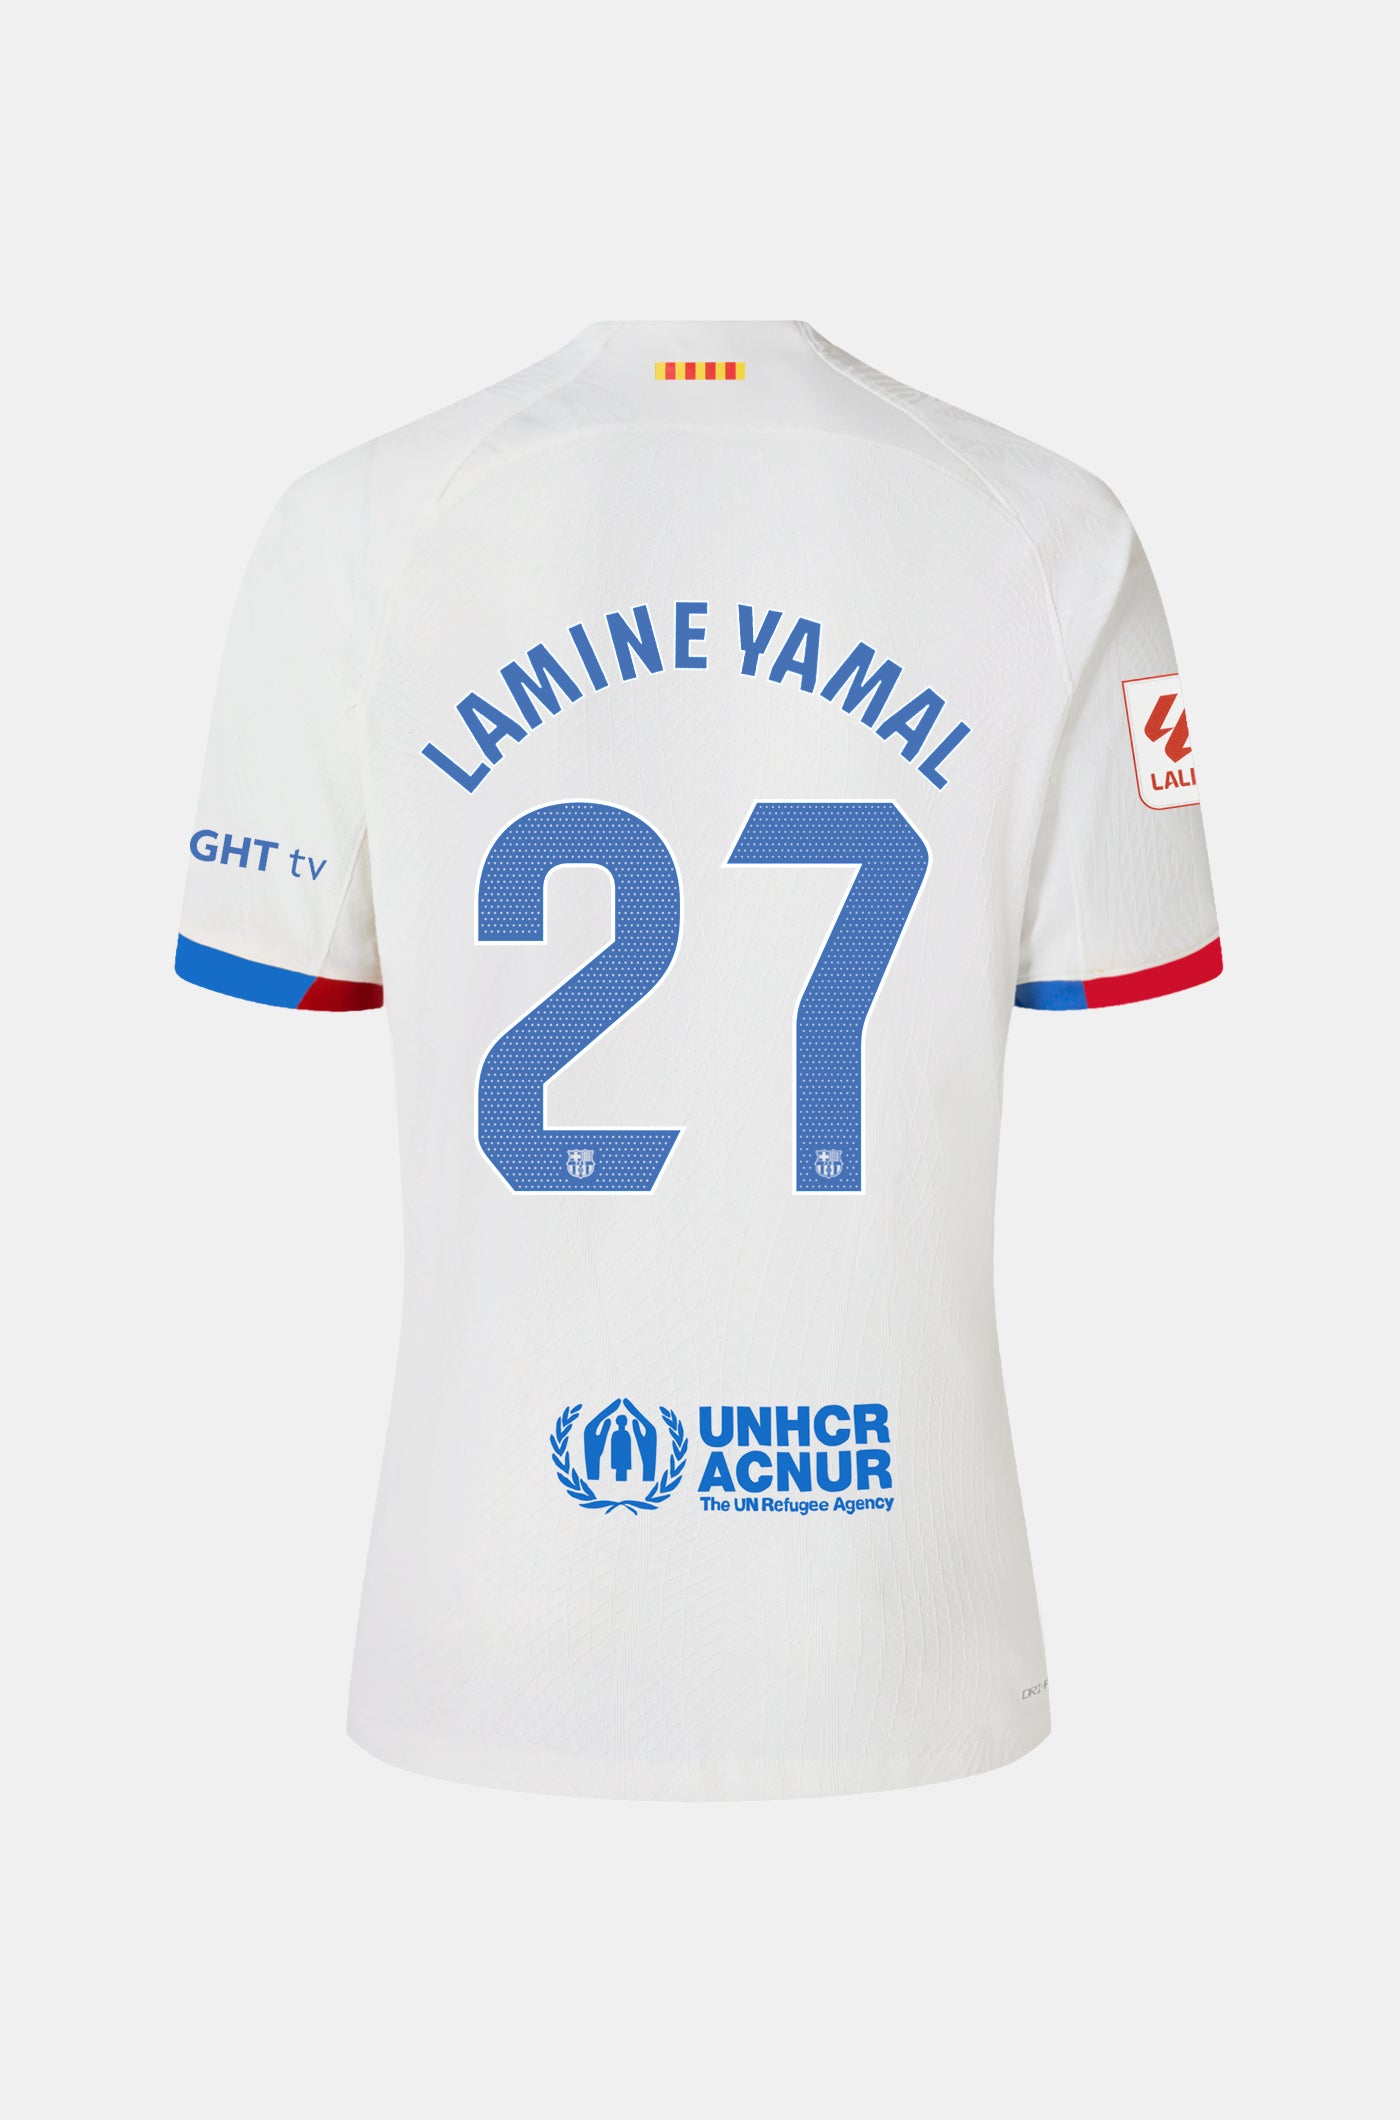 LFP FC Barcelona away shirt 23/24  - LAMINE YAMAL